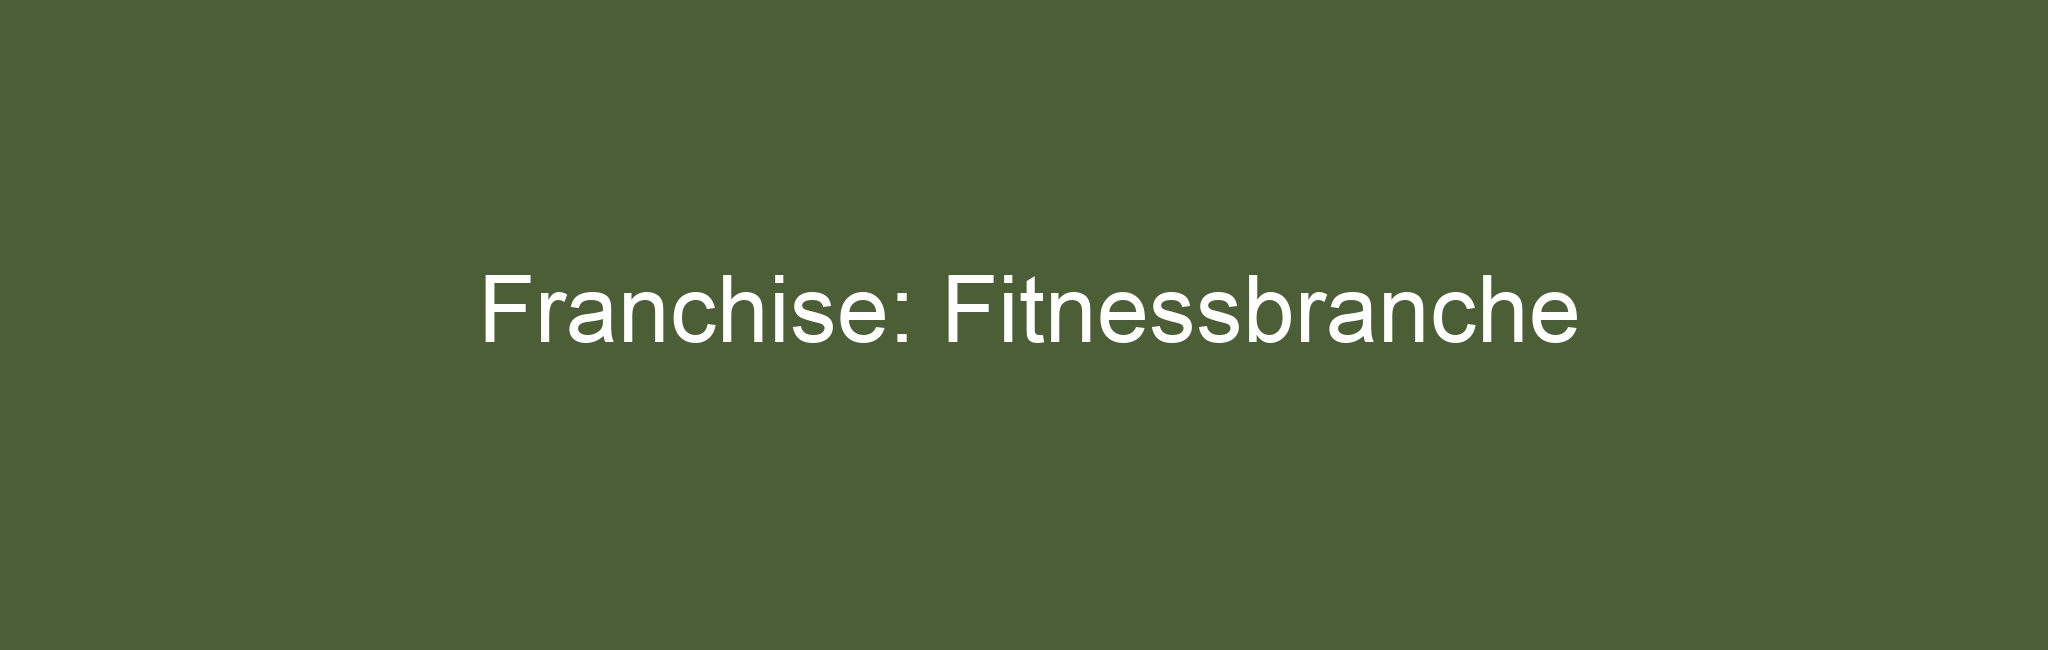 Franchise: Fitnessbranche